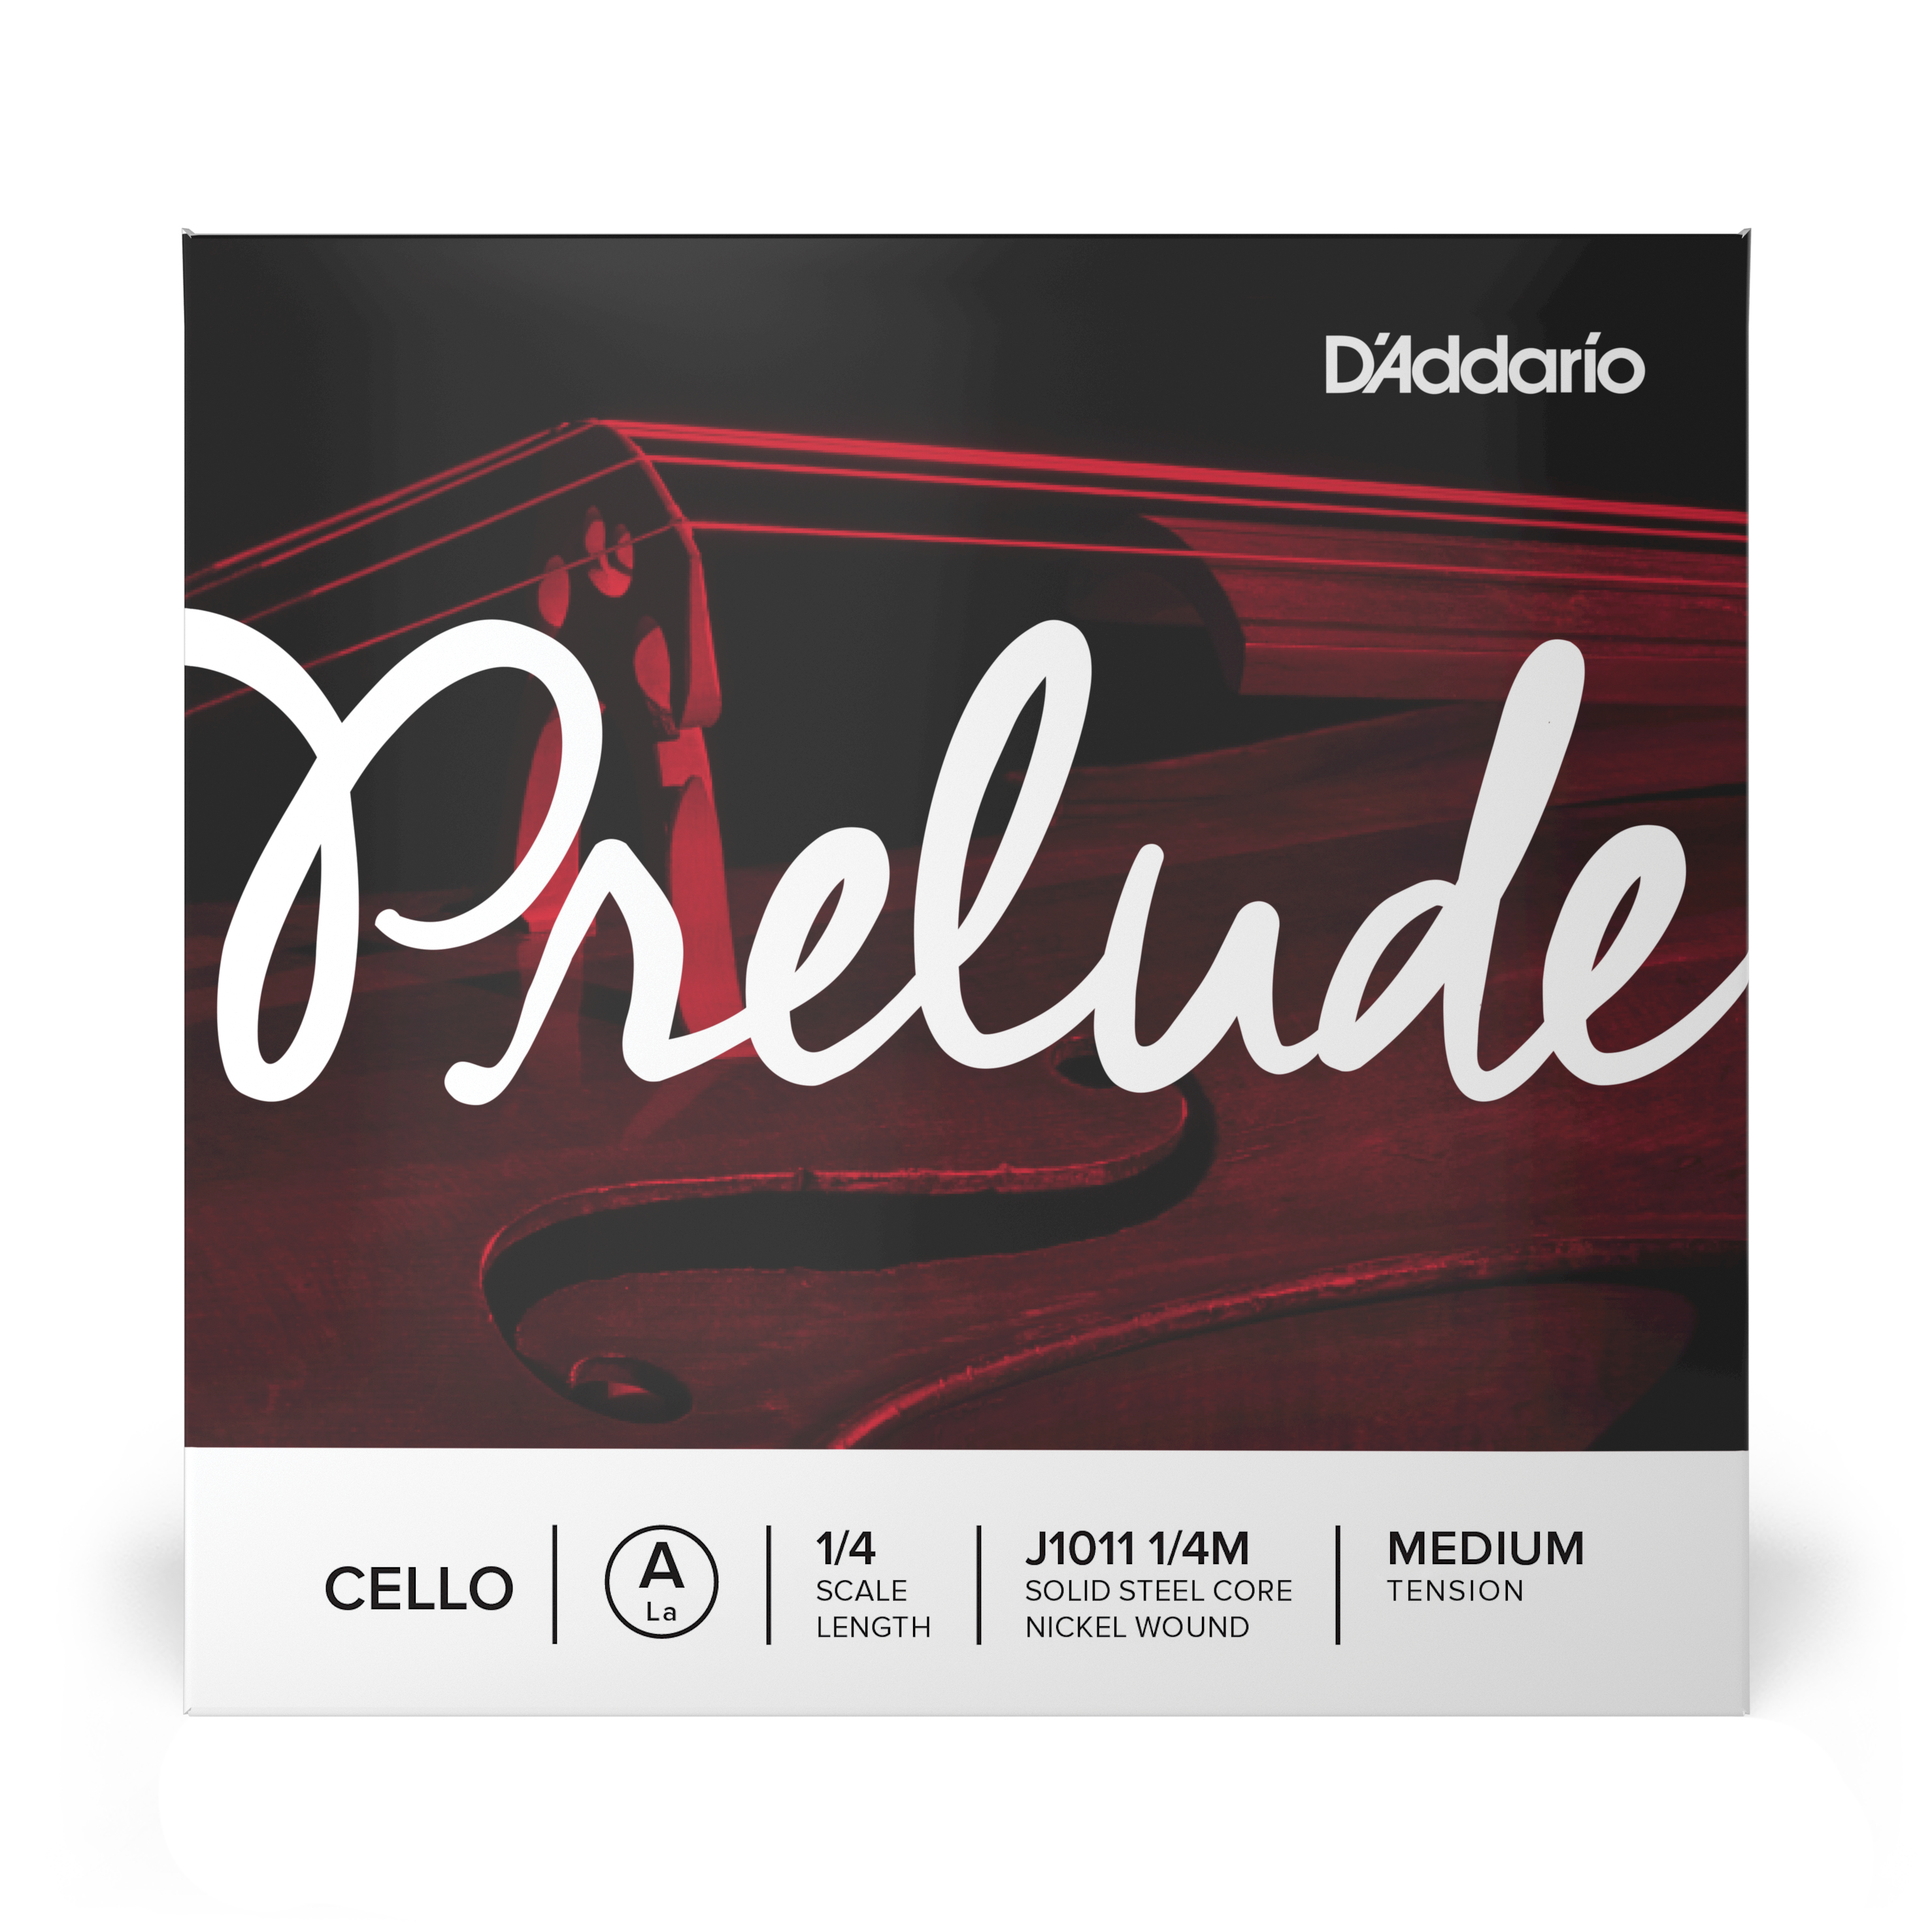 Daddario orchestral it J1011 1/4m corda singola la d'addario prelude per violoncello, scala 1/4, tensione media